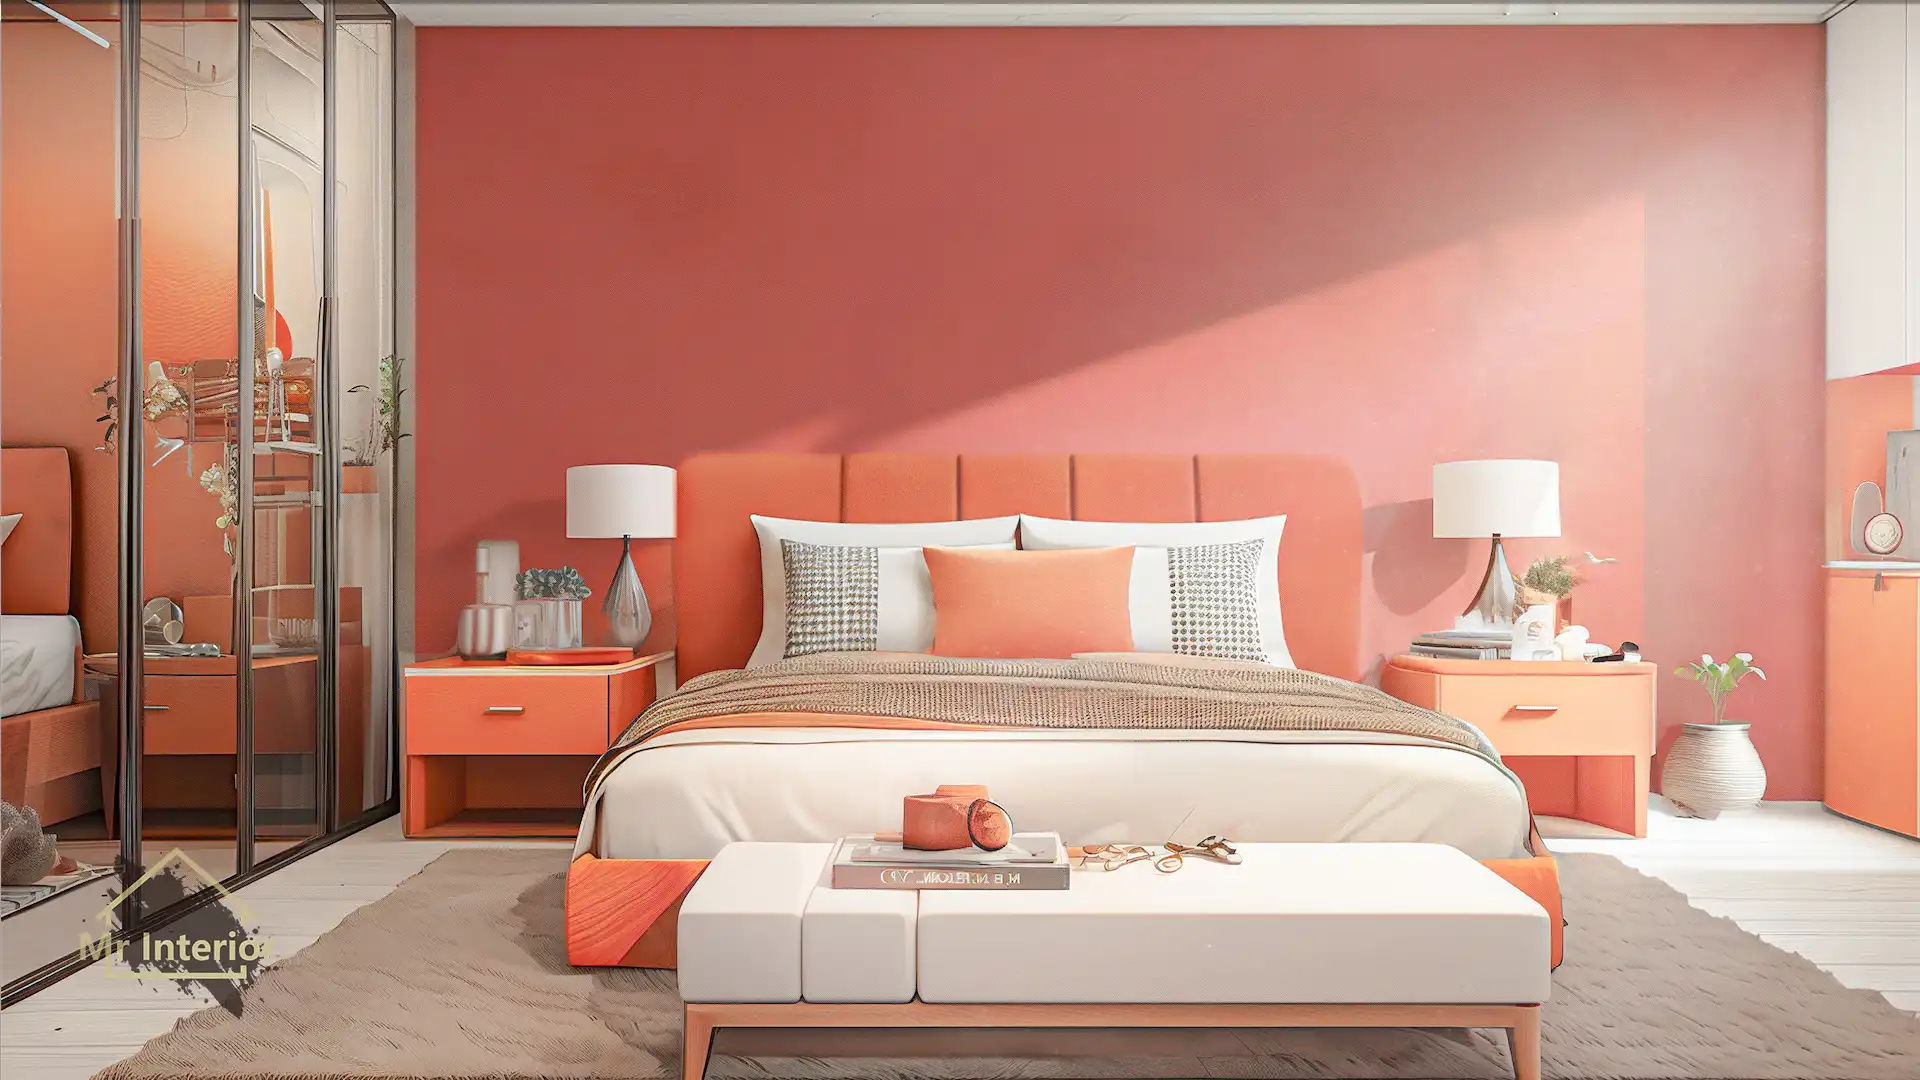 這是白羊座的睡房。設計風格探用了現代風；色調明亮，米色主調，紅色及橙色點綴；圖片中句含了橙色軟墊雙人床，鏡門掩門大衣櫃，白色及橙色特色牆身，白色懶人梳化，白羊座裝飾及自然光等。Mr Interior室內設計裝修及傢俬風格。